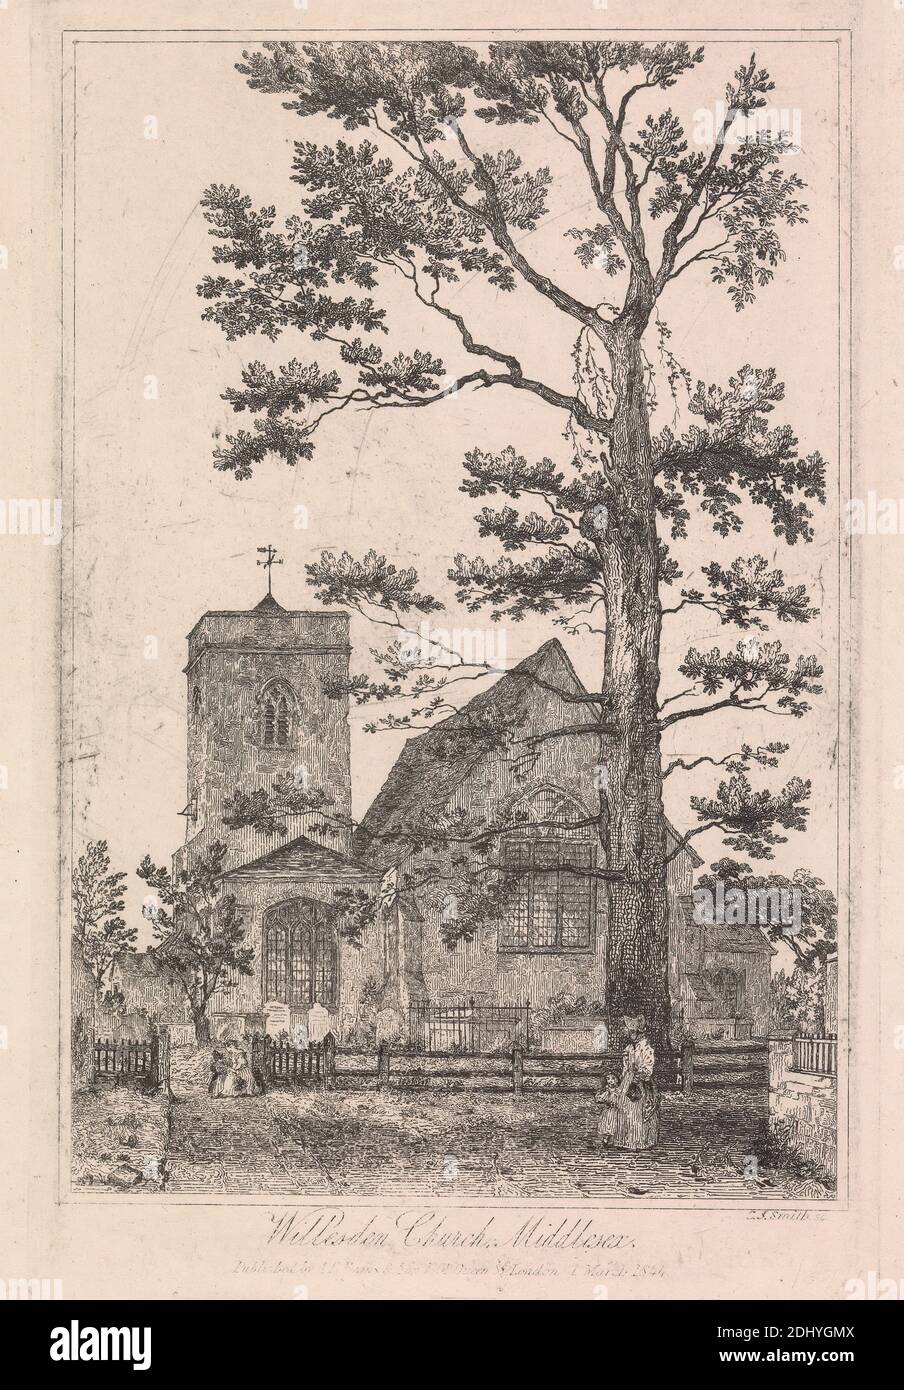 Willesden Church, Middlesex, Charles John Smith, 1803–1838, britisch, nach unbekannter Künstler, 1844, Etching Stockfoto